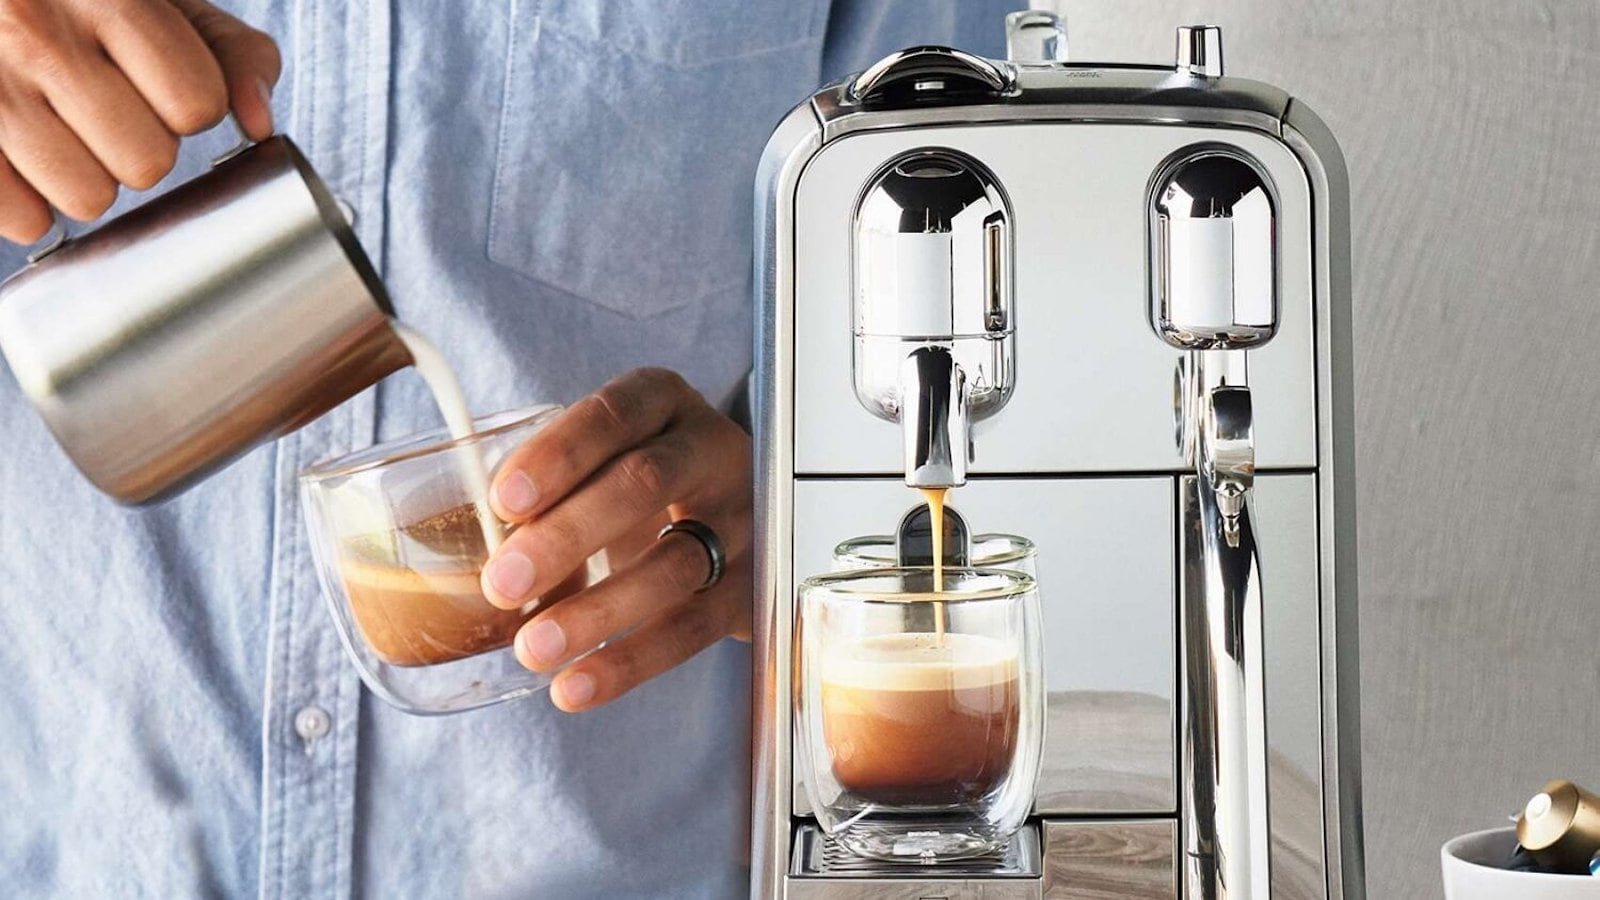 Nespresso Creatista Plus espresso drink maker heats up in only 3 seconds